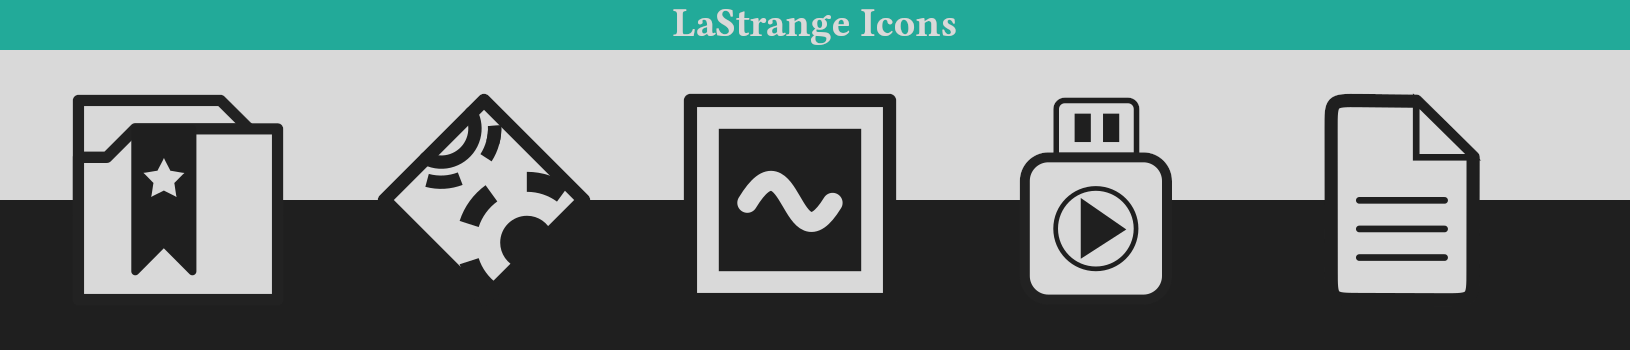 LaStrange icon example